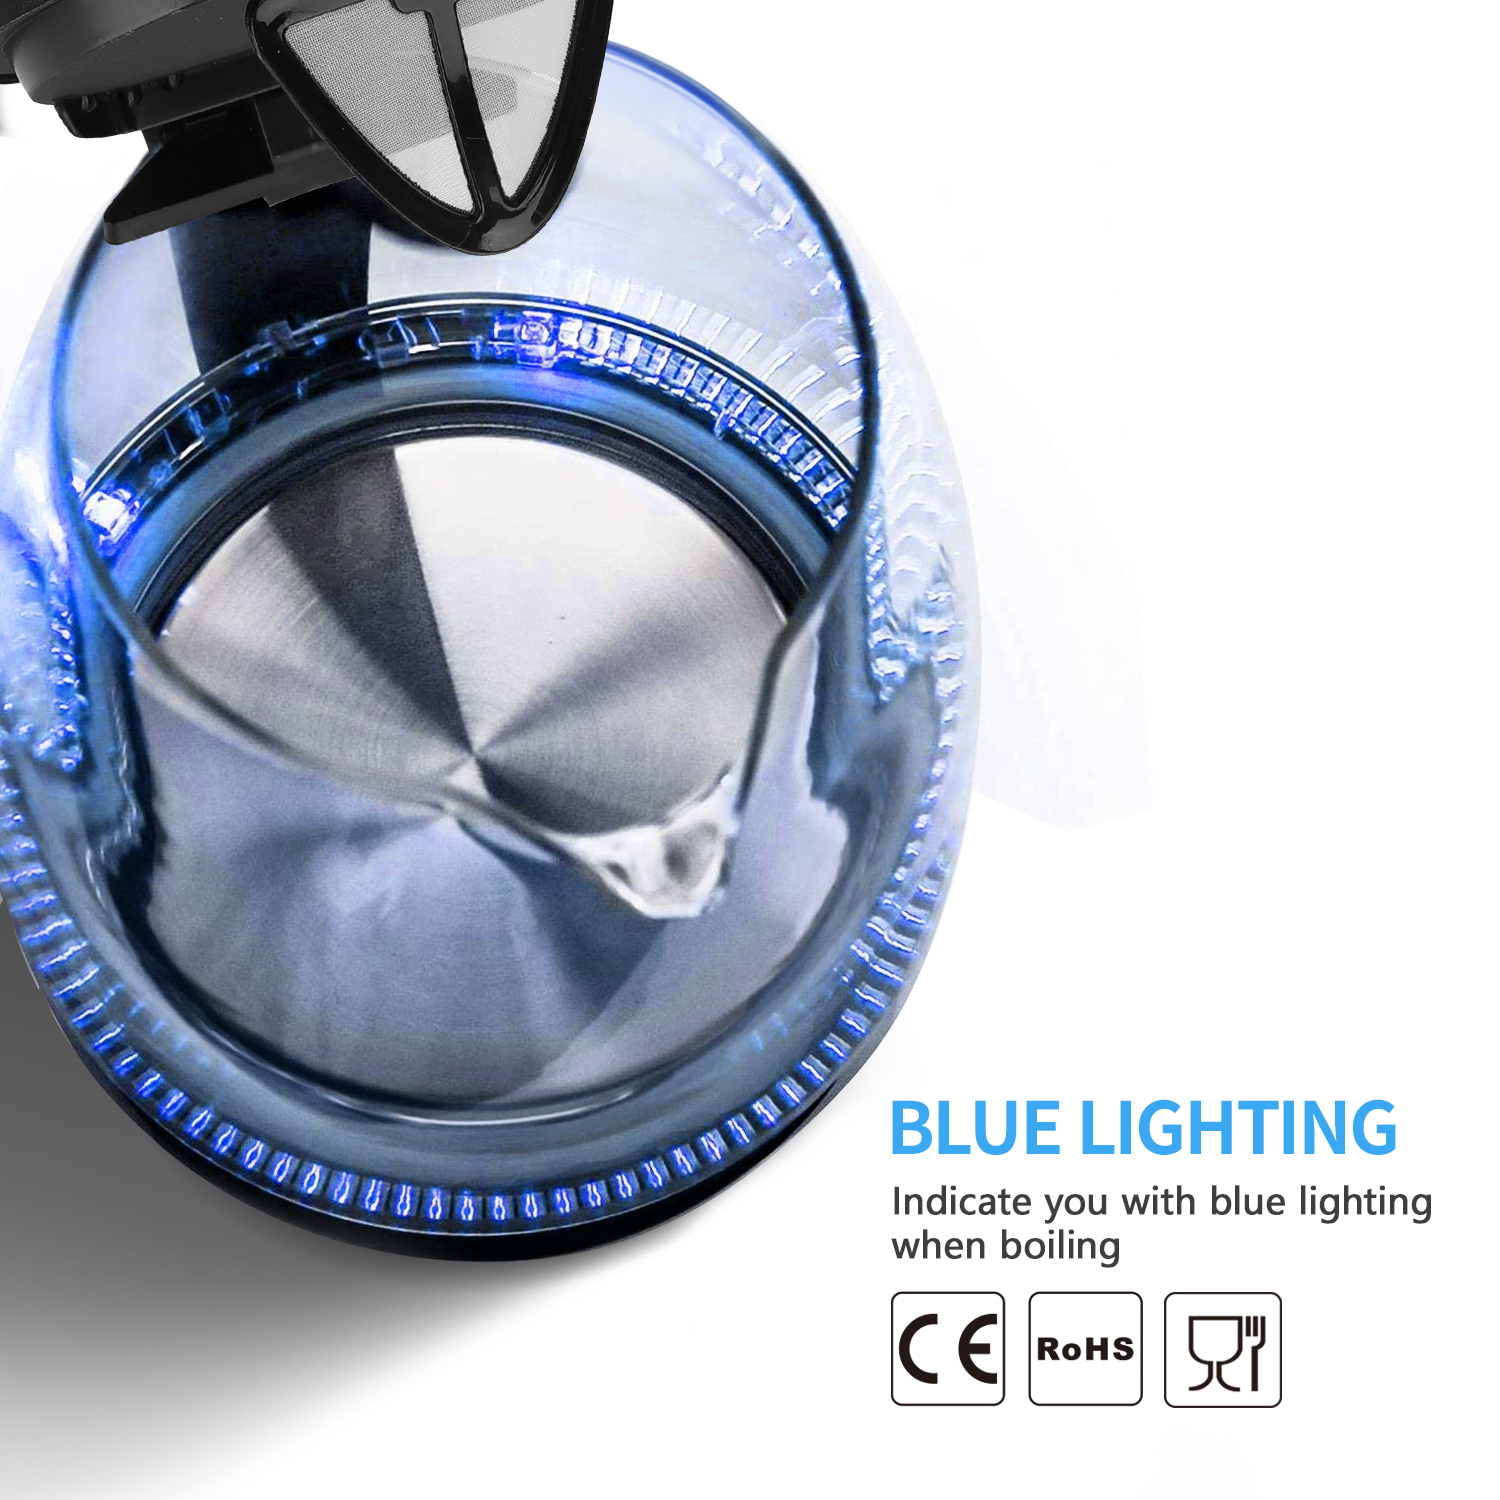 Aigostar Adam 30GOM - Hervidor de cristal con iluminación led de 1,7 litros de capacidad, 2200W de potencia, libre de BPA y sistema de protección contra la ebullición en seco. Diseño exclusivo.